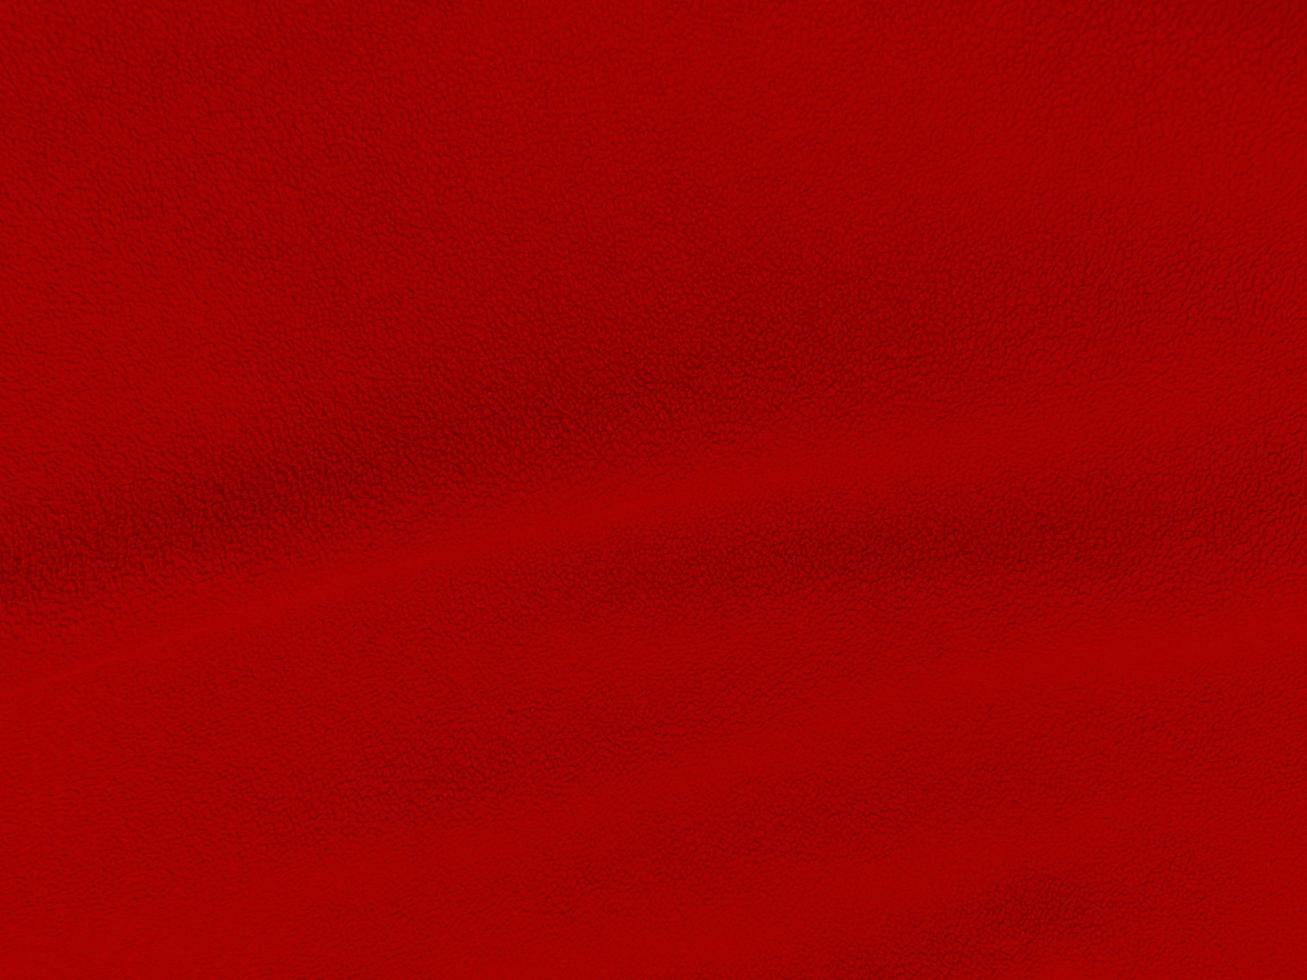 rosso lana struttura sfondo. leggero naturale pecora lana vergine. rosso senza soluzione di continuità cotone. struttura di soffice pelliccia per designer. avvicinamento frammento rosso lana tappeto.. foto